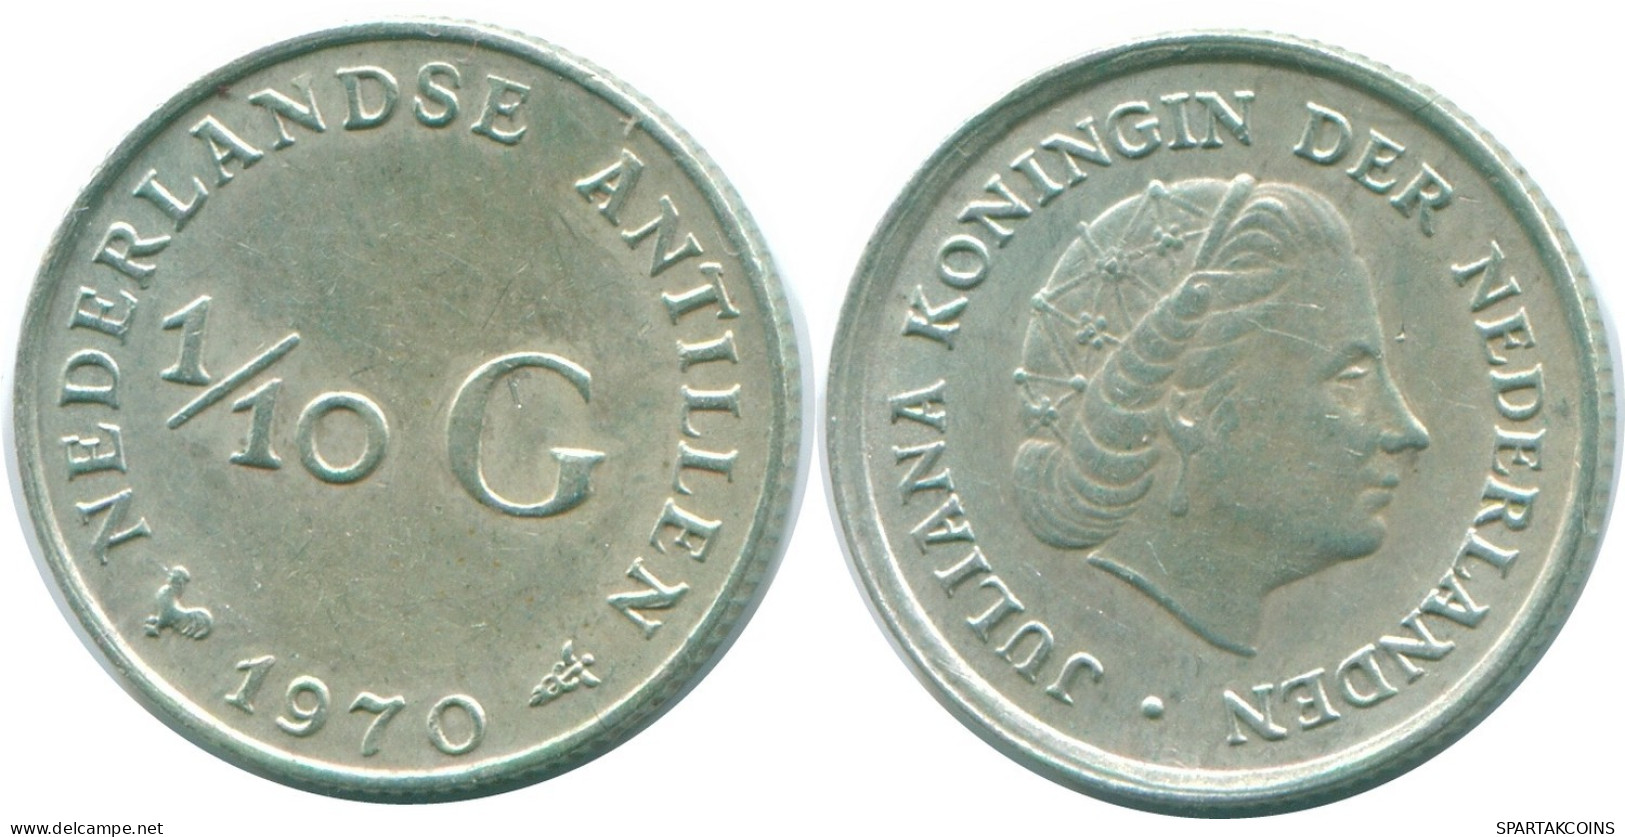 1/10 GULDEN 1970 NIEDERLÄNDISCHE ANTILLEN SILBER Koloniale Münze #NL12958.3.D.A - Antille Olandesi